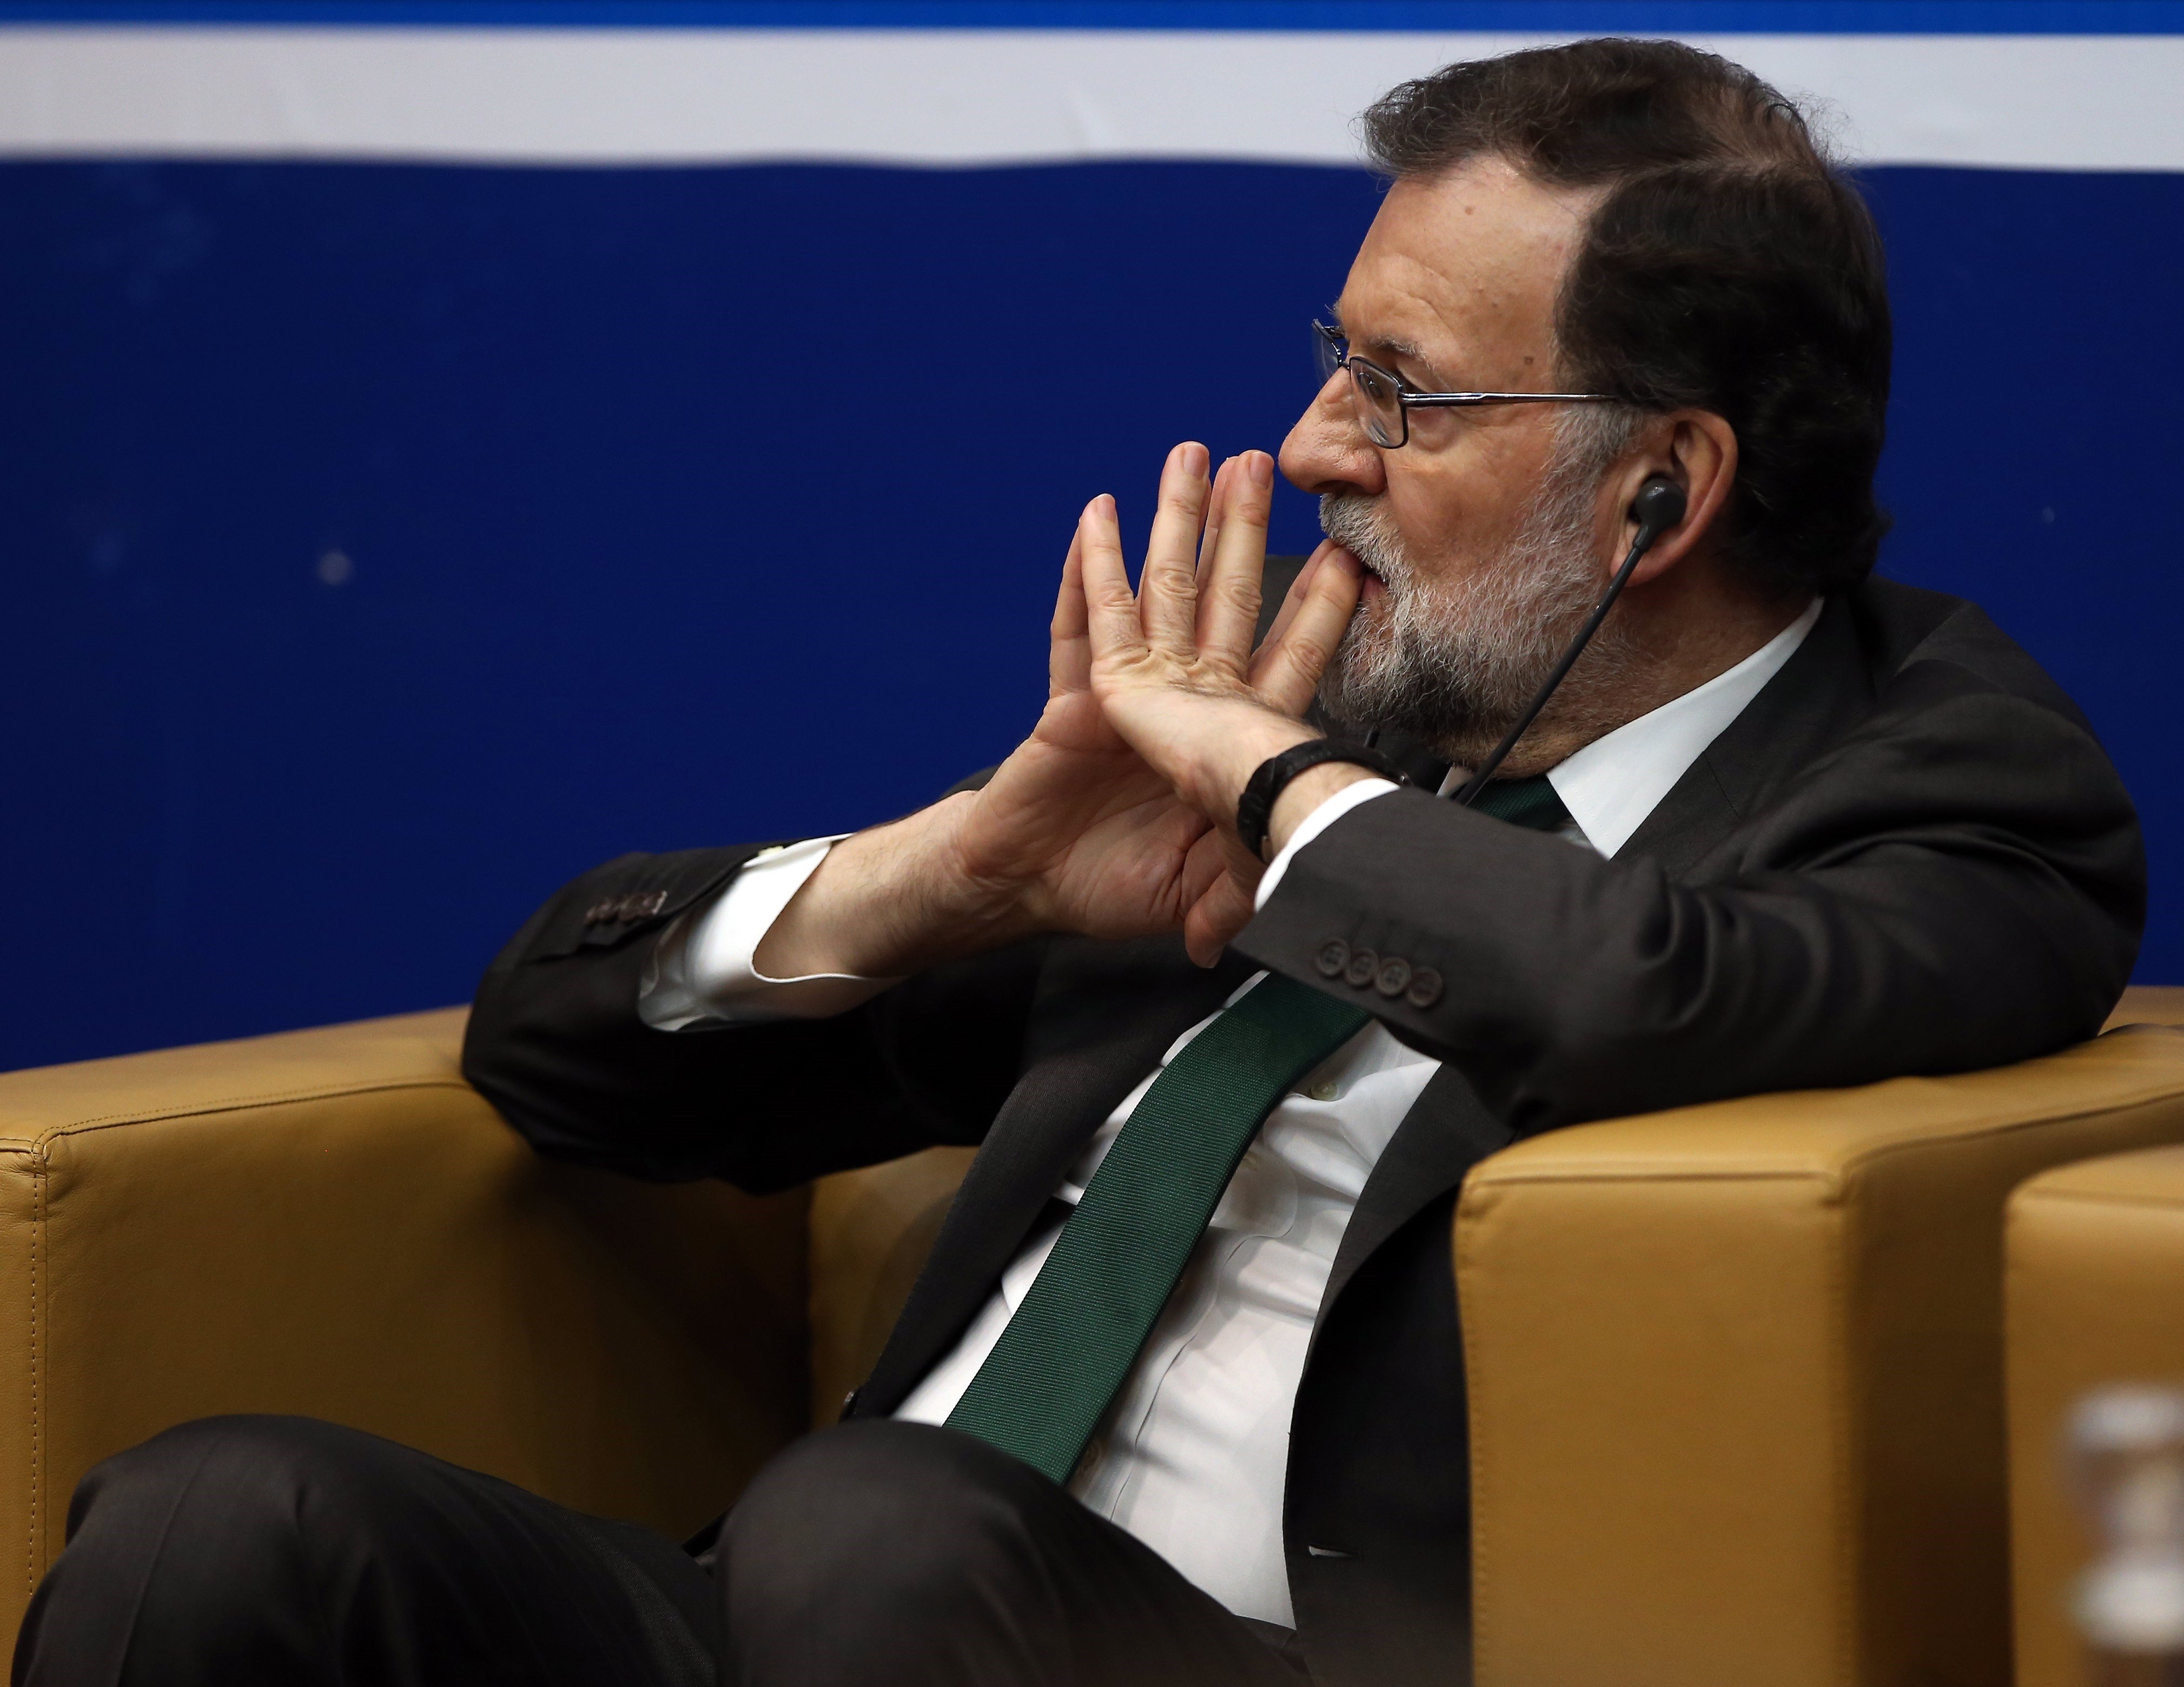 Vídeo: Els coneixements de Rajoy sobre política europea